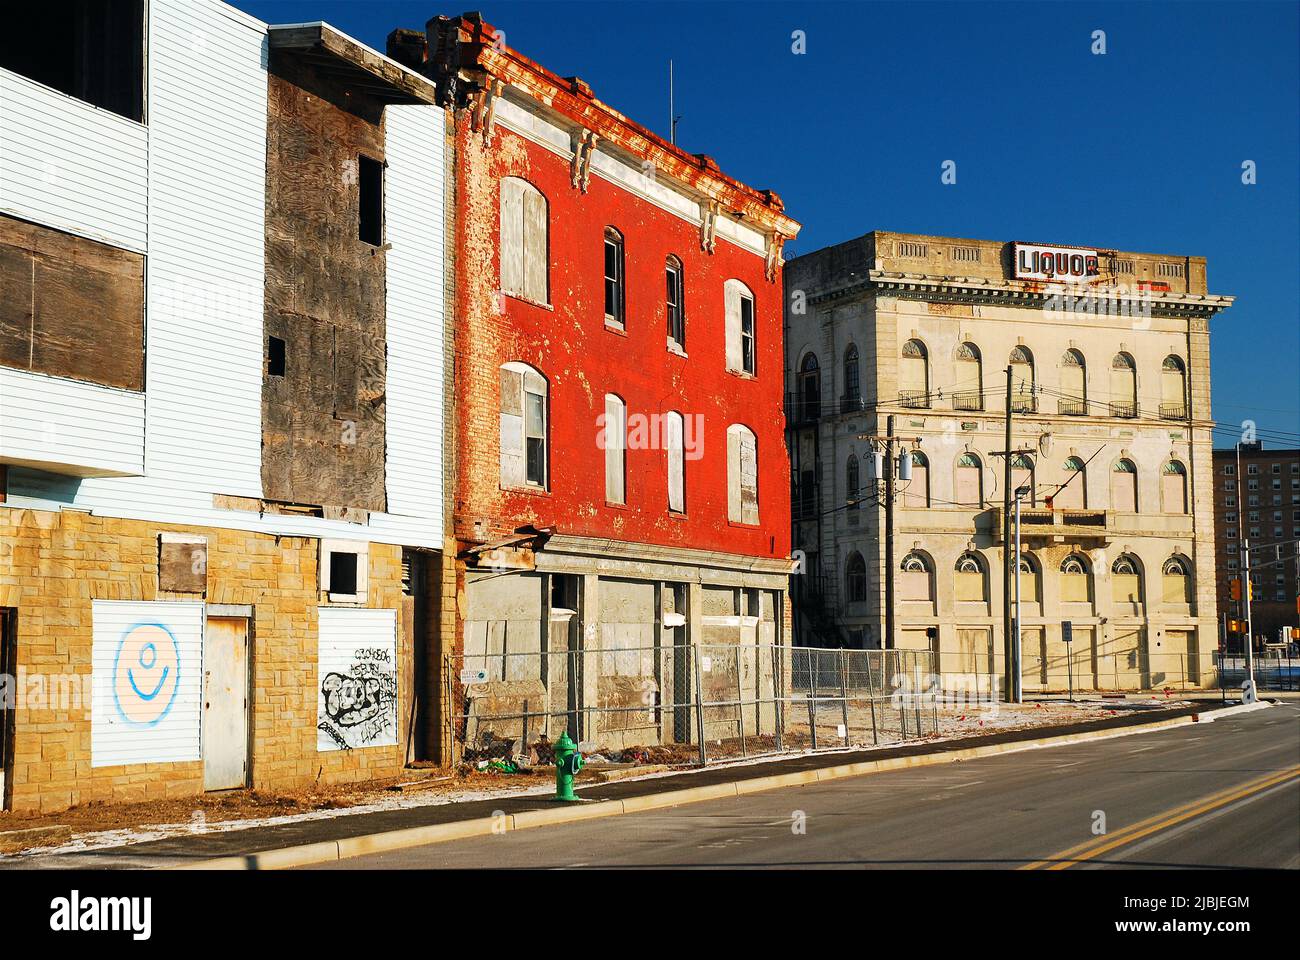 Edifici abbandonati e fatiscenti costeggiano una strada cittadina che mostra gli effetti del degrado urbano Foto Stock